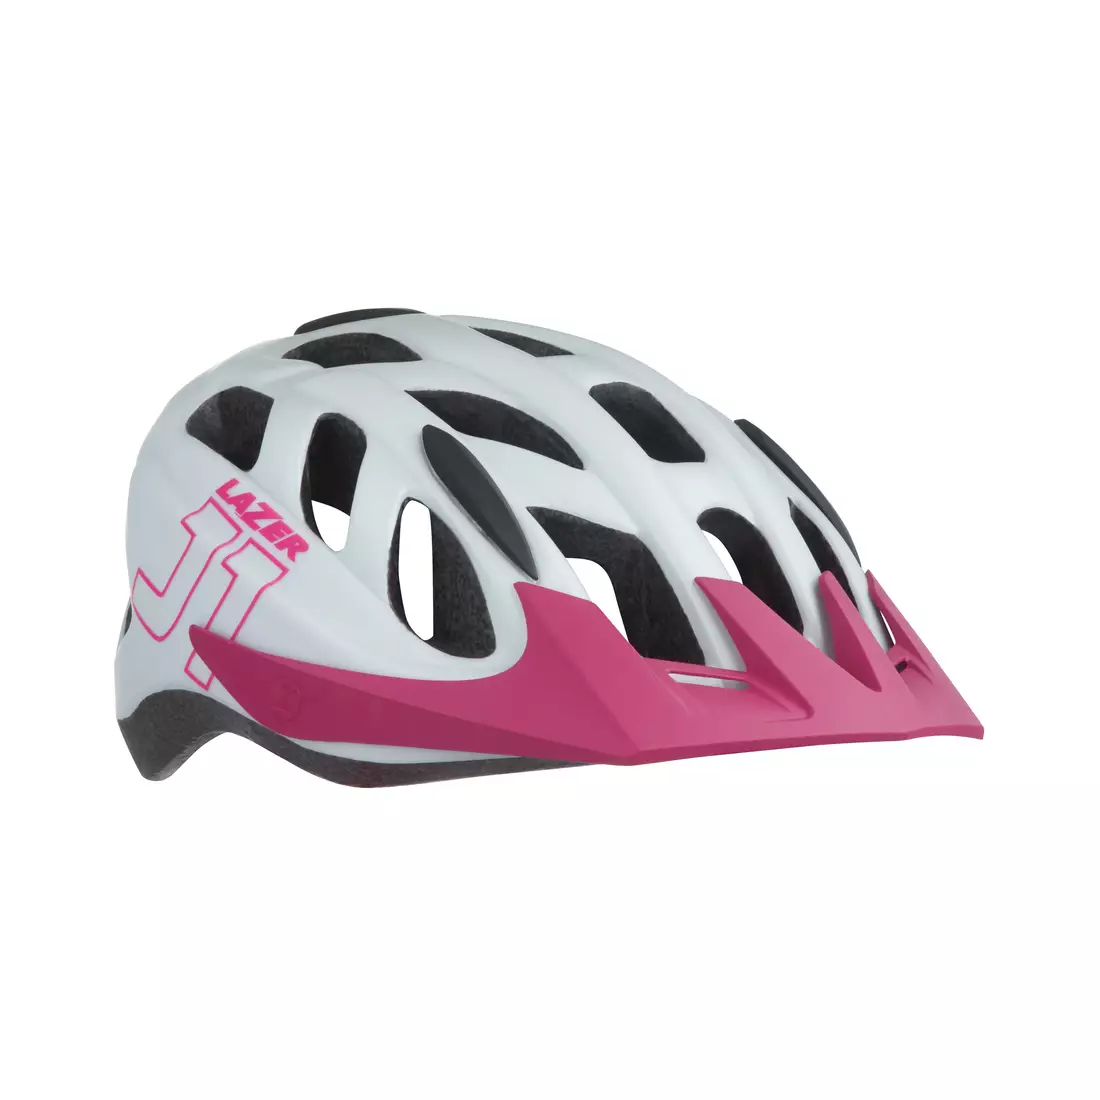 LAZER dětská / juniorská cyklistická j1 matte white pink bílo-růžová BLC2197885185